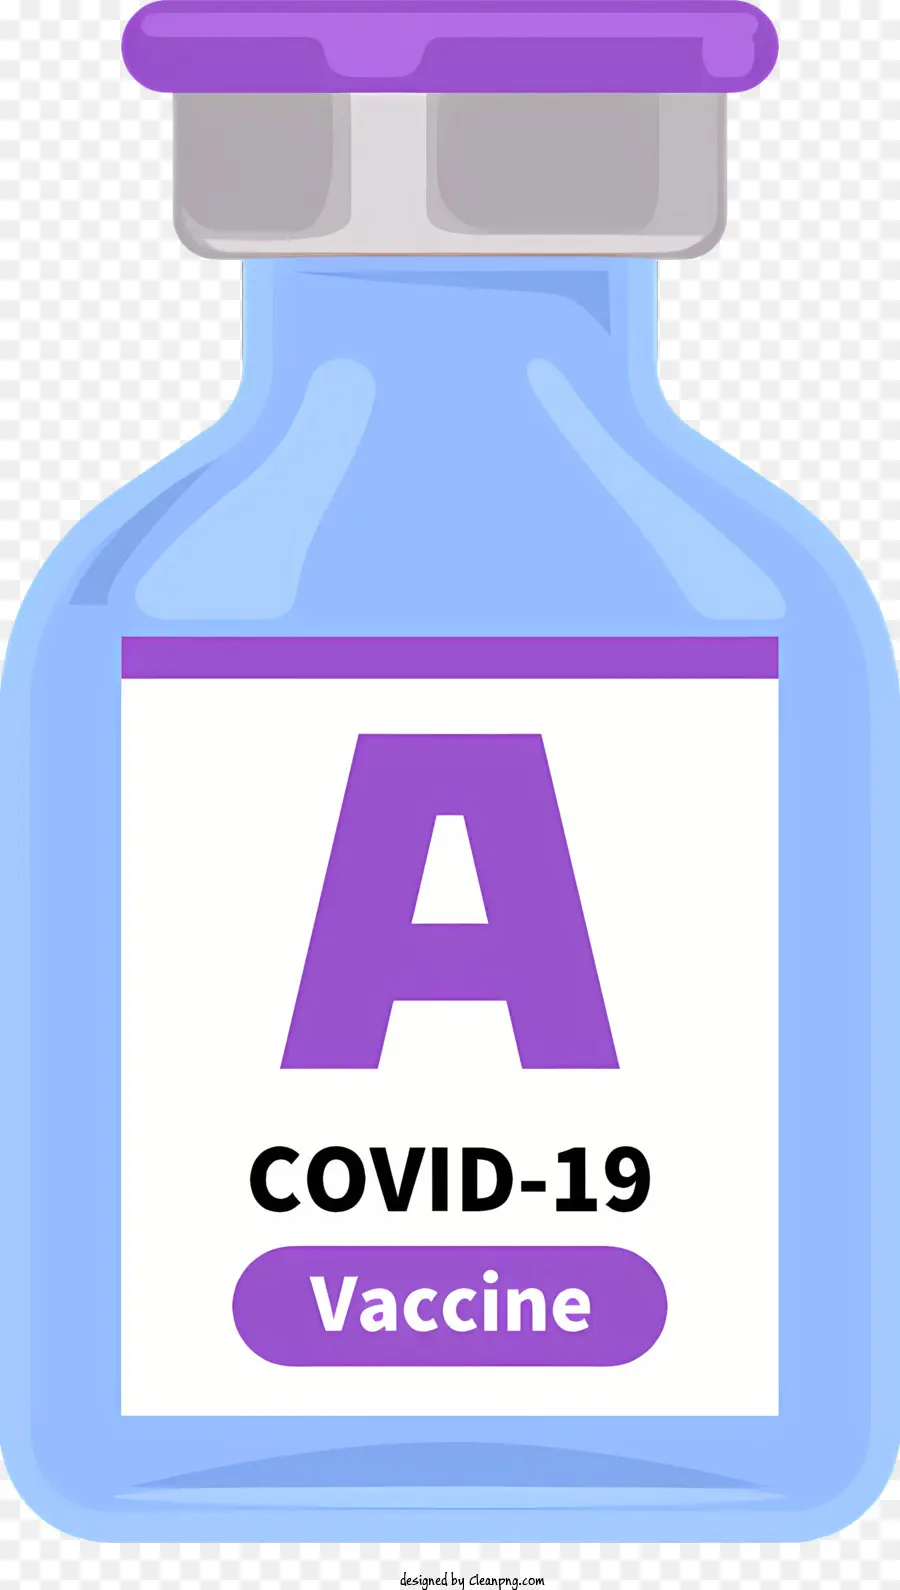 COVID-19 VACCINO SEMPREVIBILE COVID-19 VACCINA BLU e PERPOLA COVID-19 PROVEZIONE BLACO BLACK BLACK BLACK - Bottiglia di vaccino covid-19: blu, viola, prevenzione